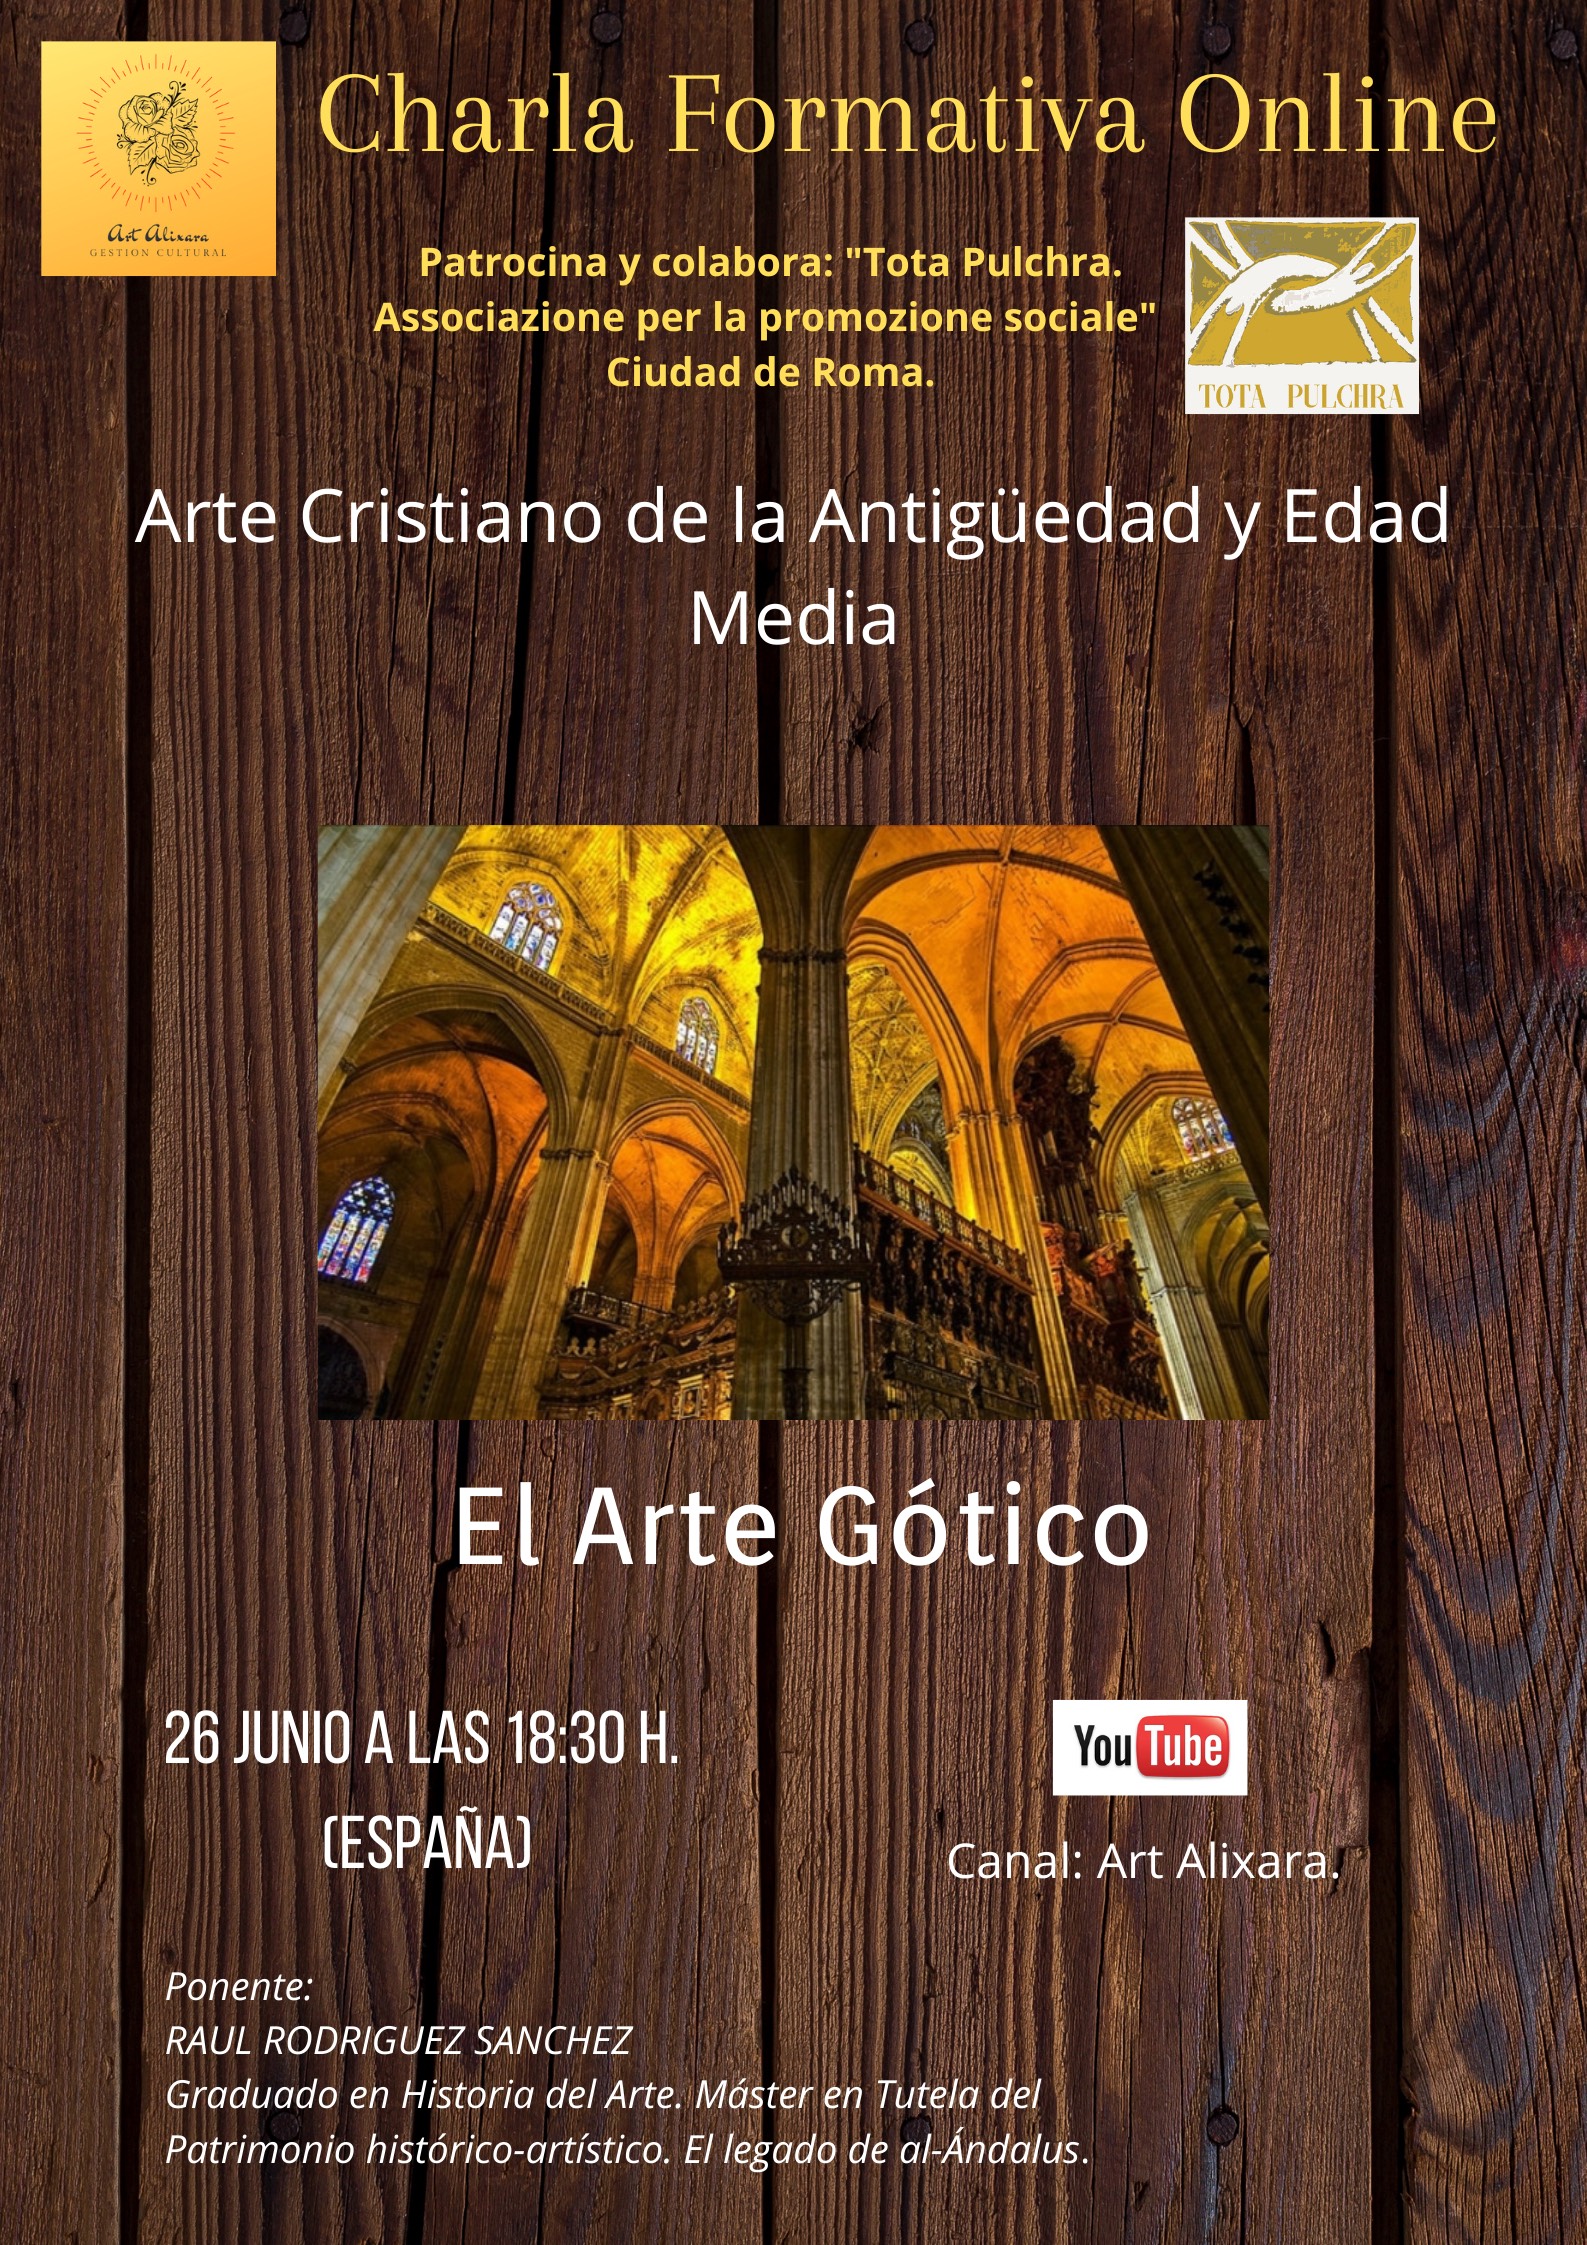 Charla Formativa “Arte Cristiano de la Antigüedad y Edad Media” - El arte gótico